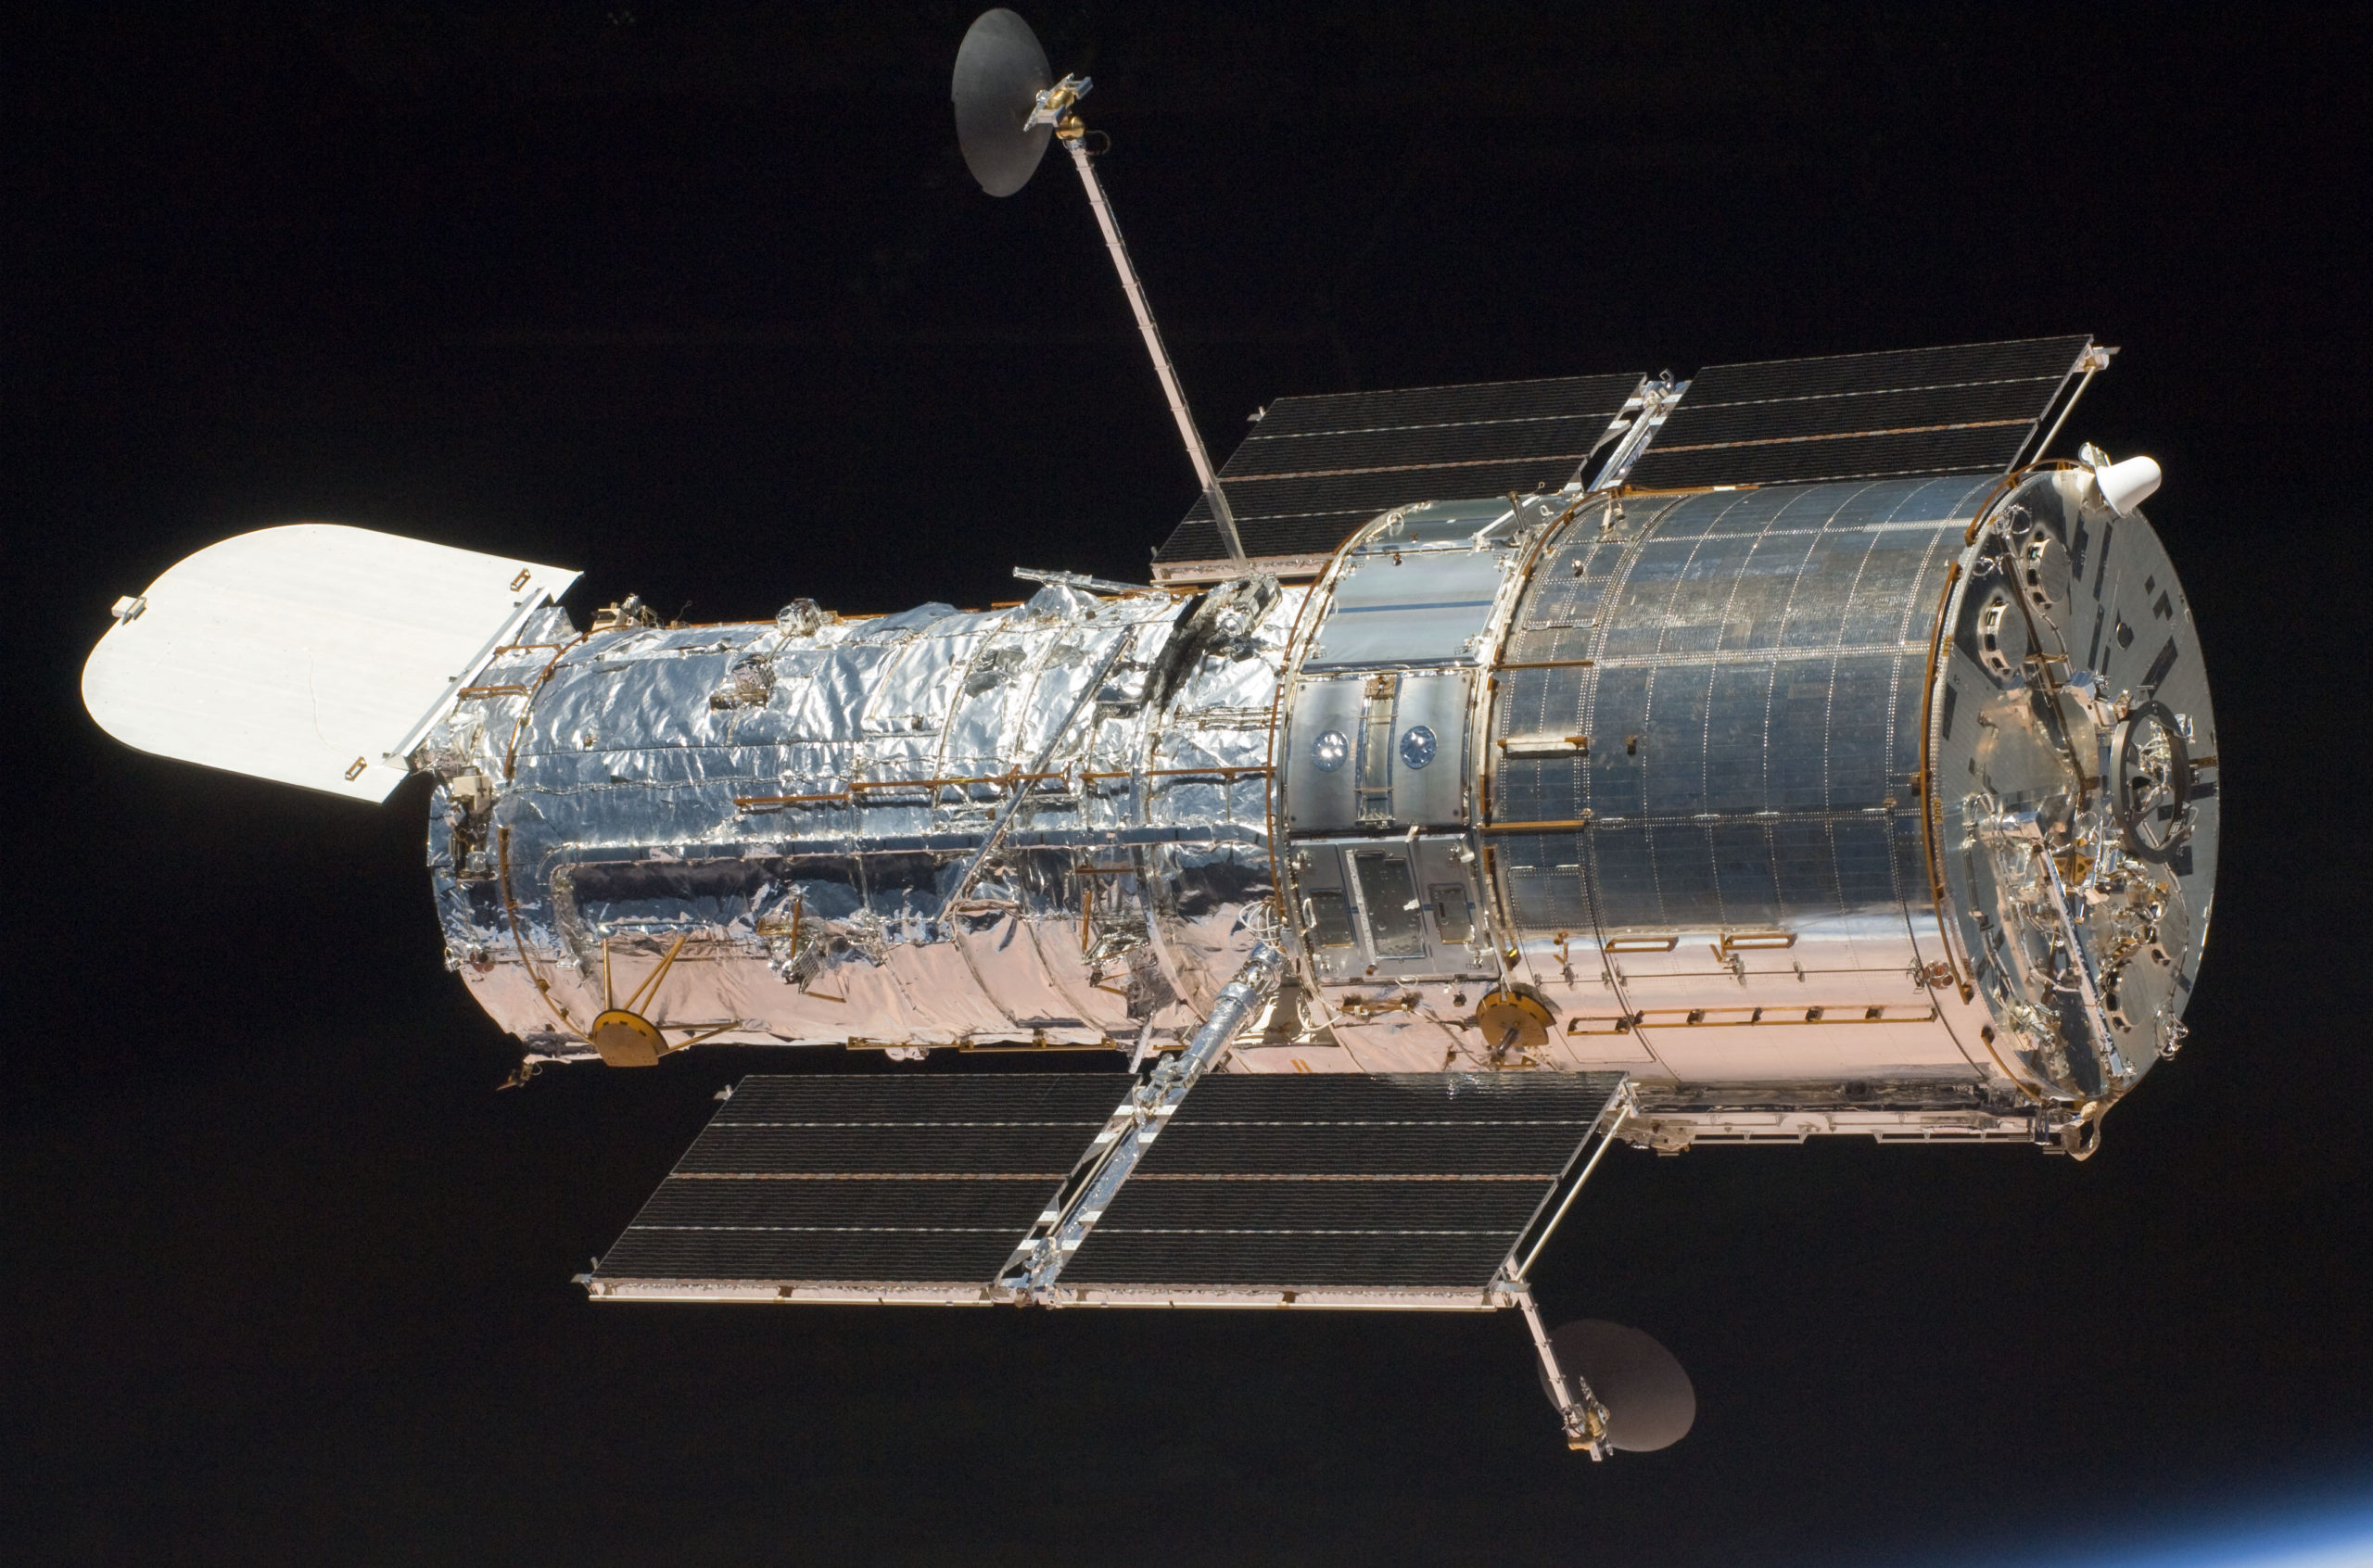 Claraboya historia Corte de pelo SpaceX al rescate del telescopio espacial Hubble - Eureka